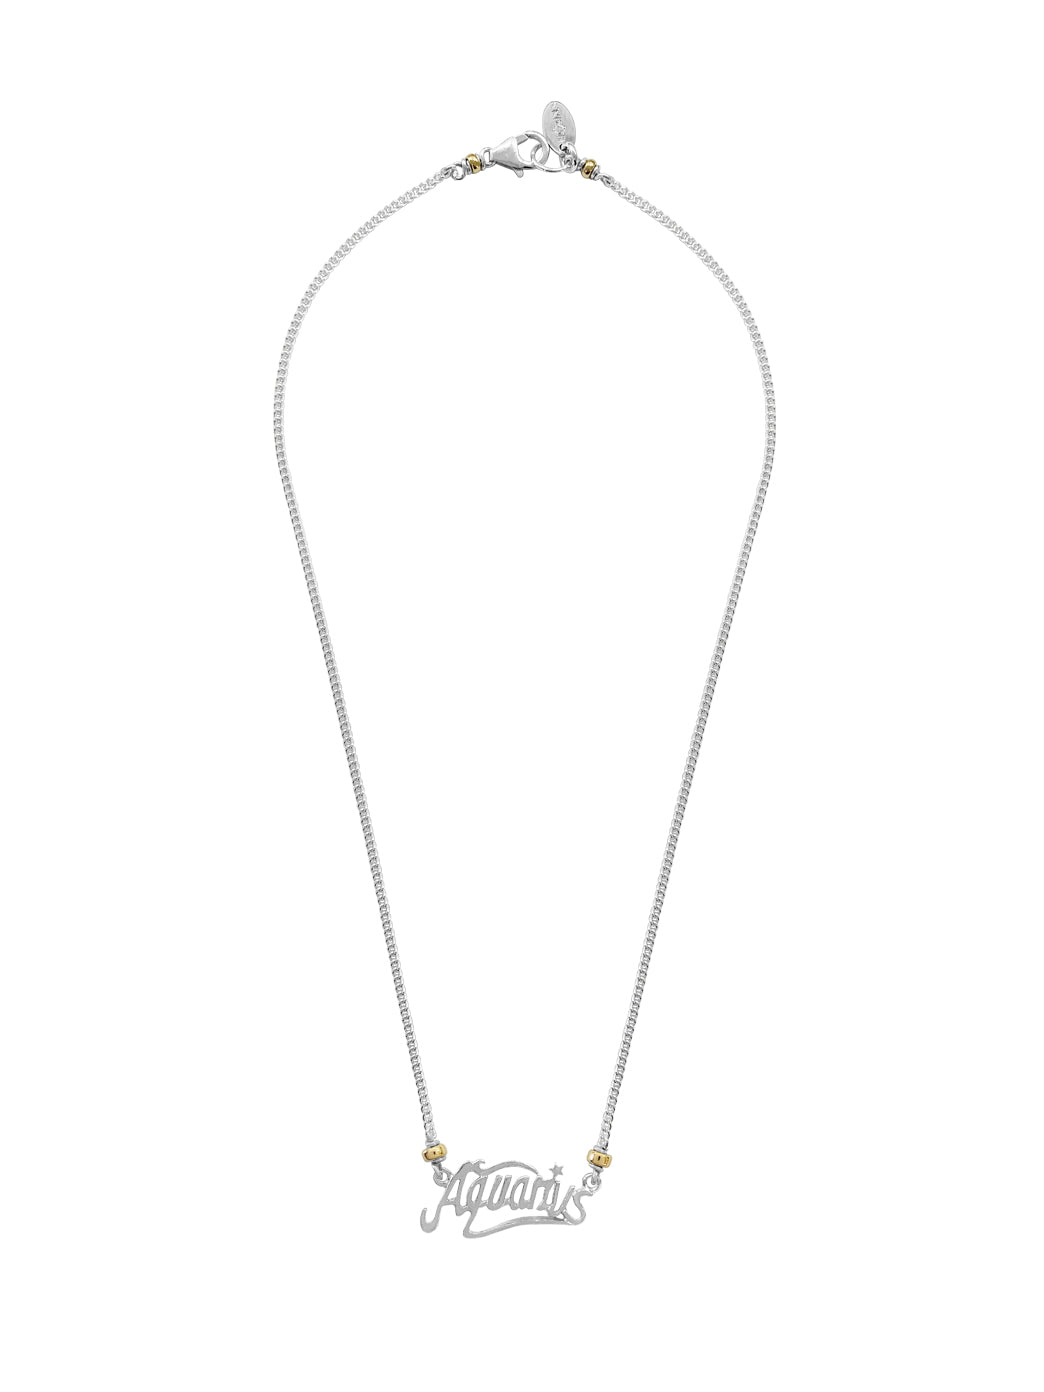 Fiorina Jewellery Aquarius Necklace